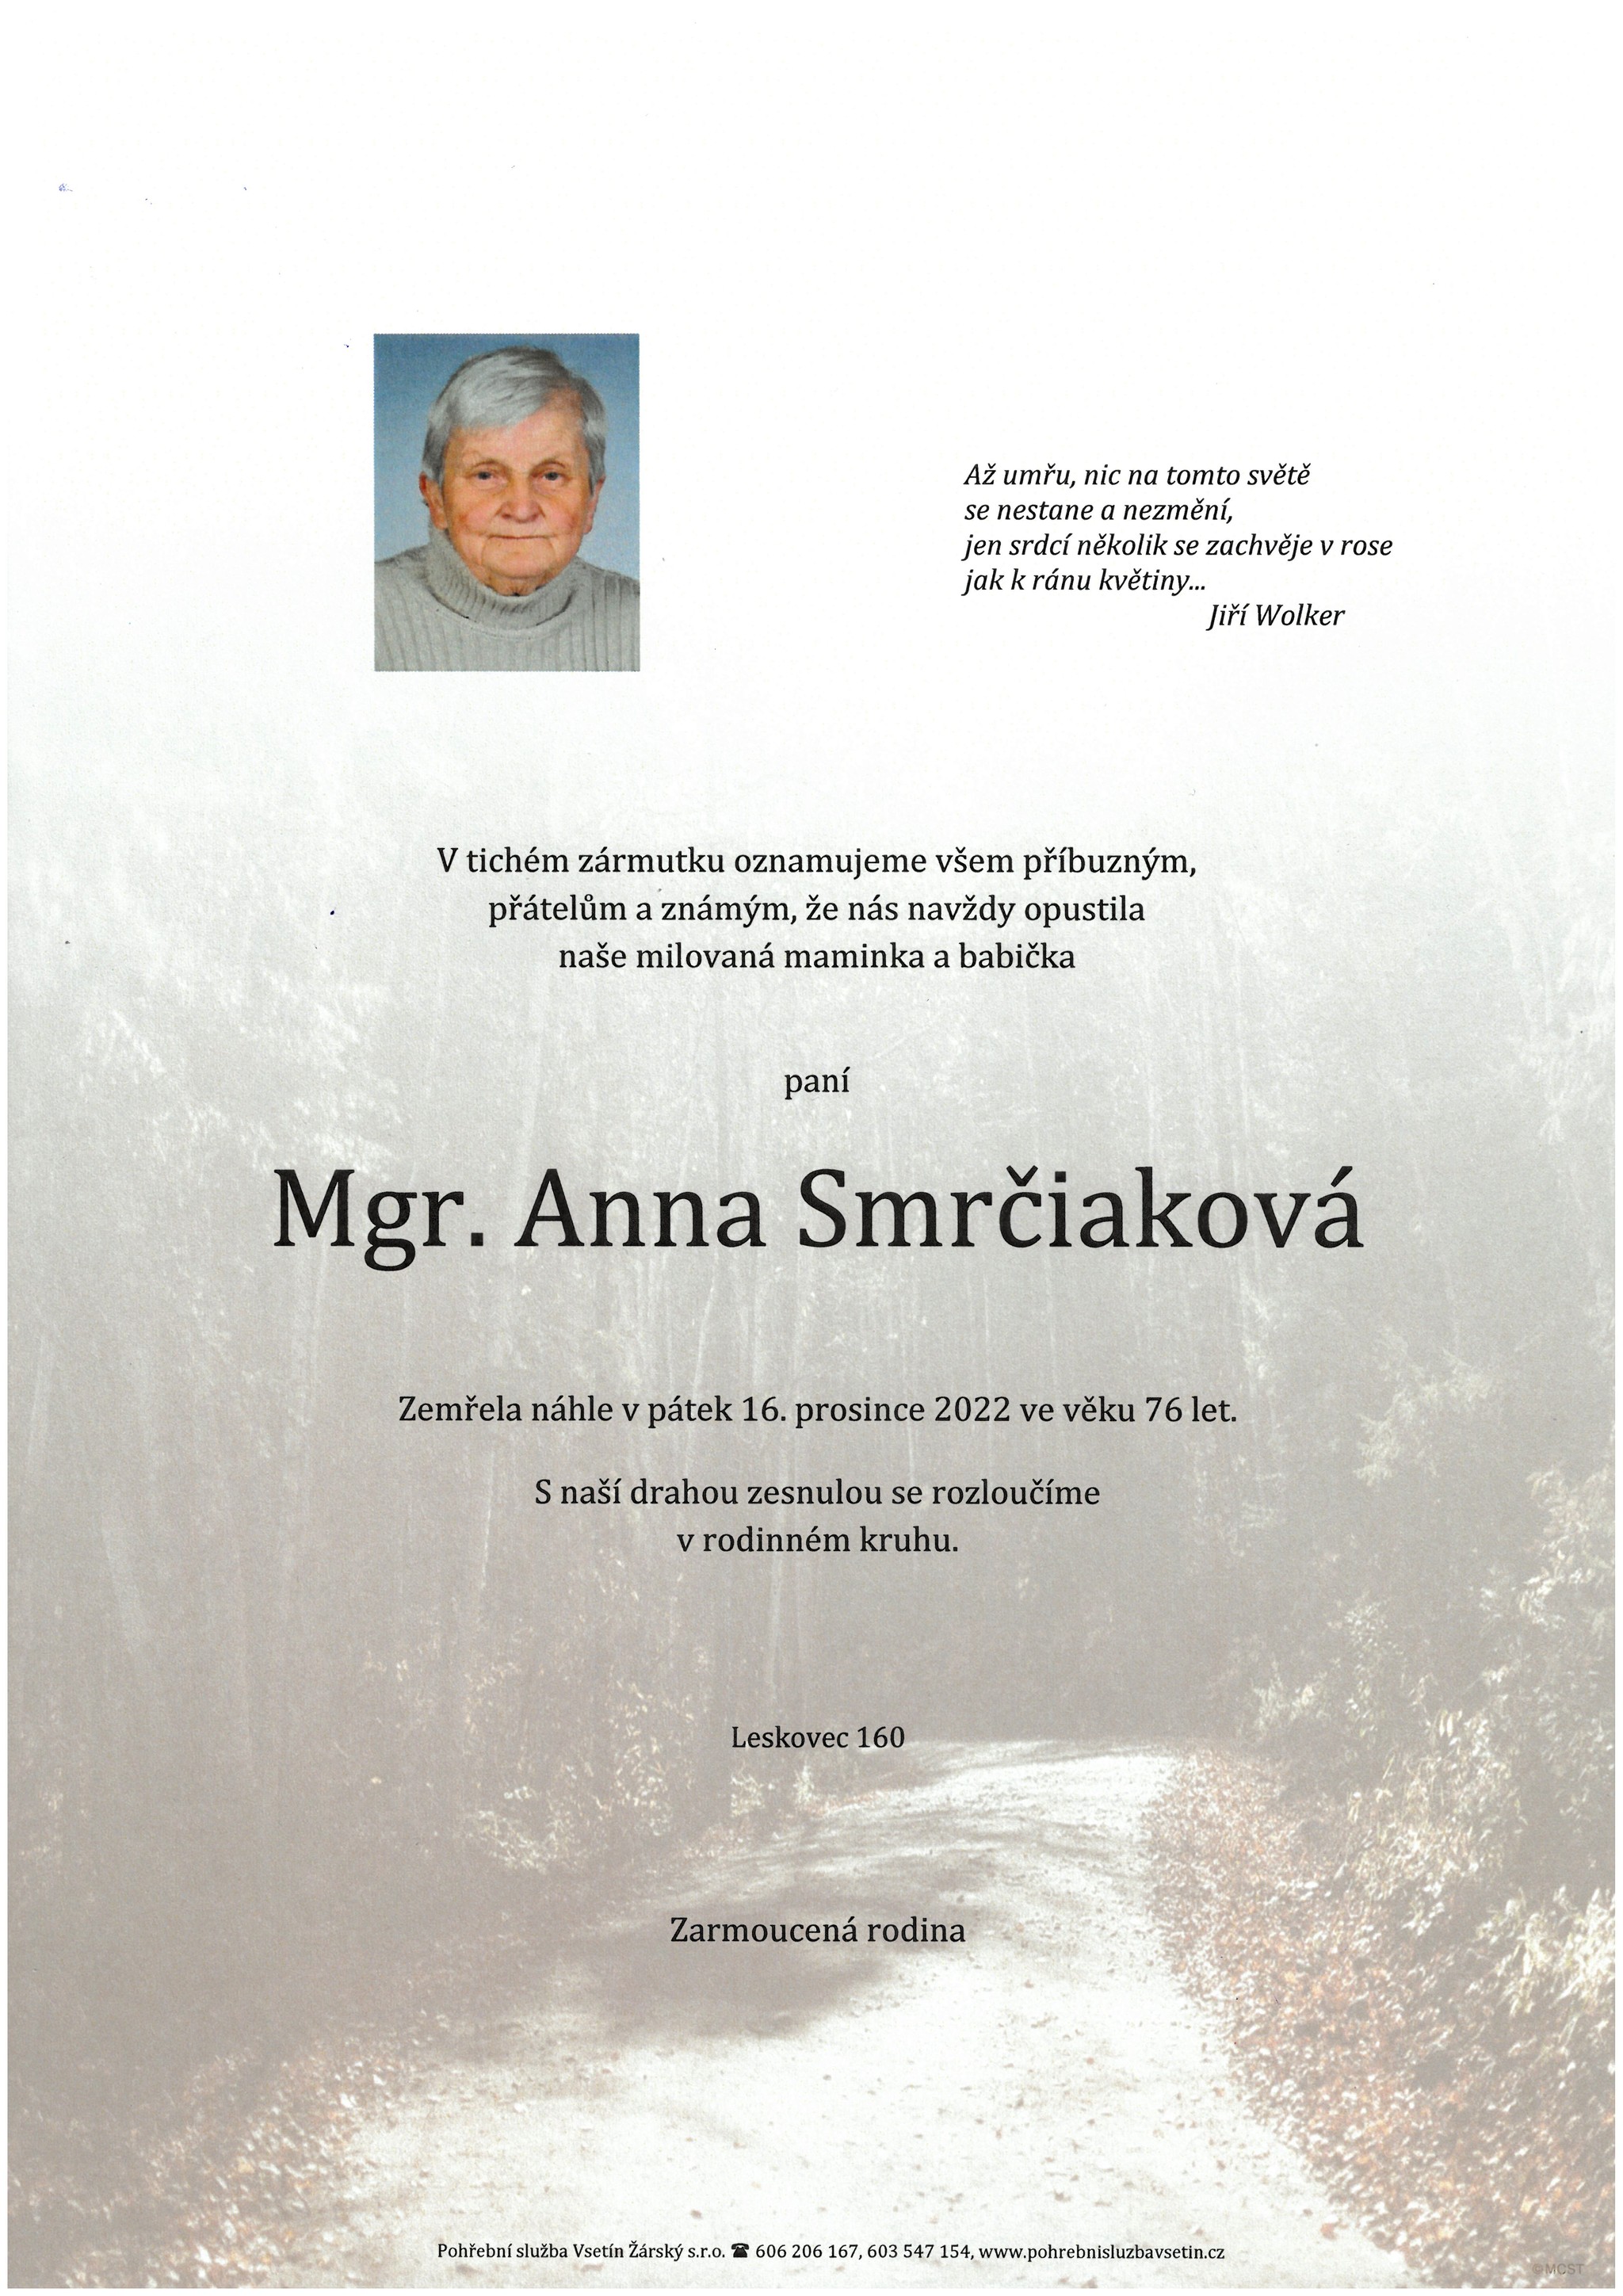 Mgr. Anna Smrčiaková